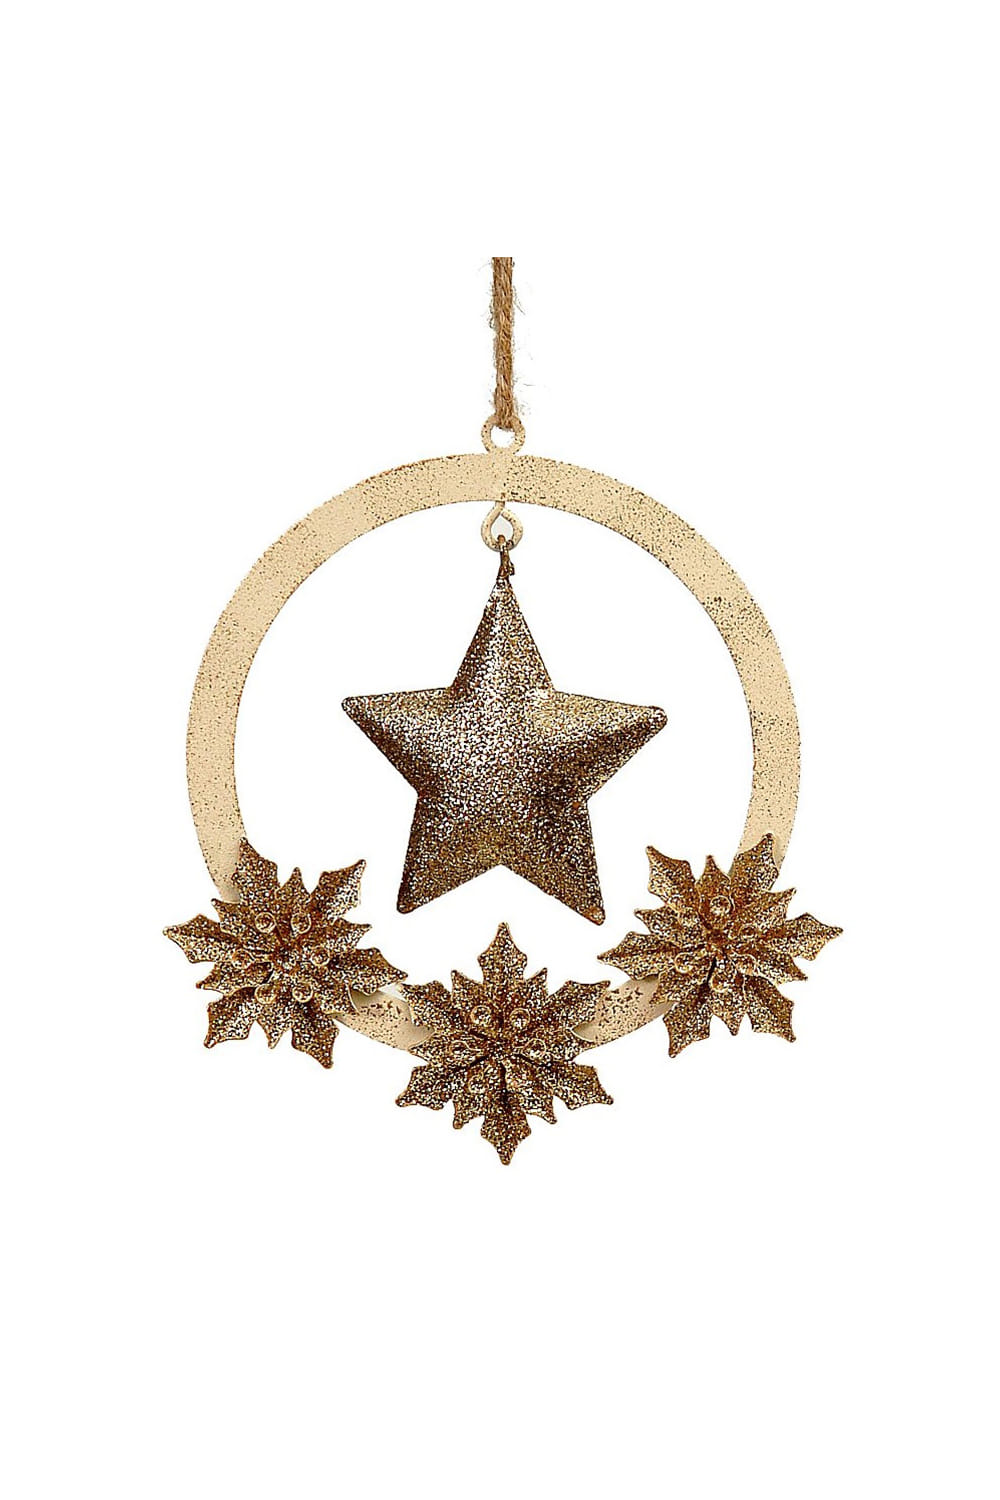 Athome Pavloudakis - Χριστουγεννιάτικο χρυσό μεταλλικό διακοσμητικό στολίδι αστέρι σε στεφάνι (11